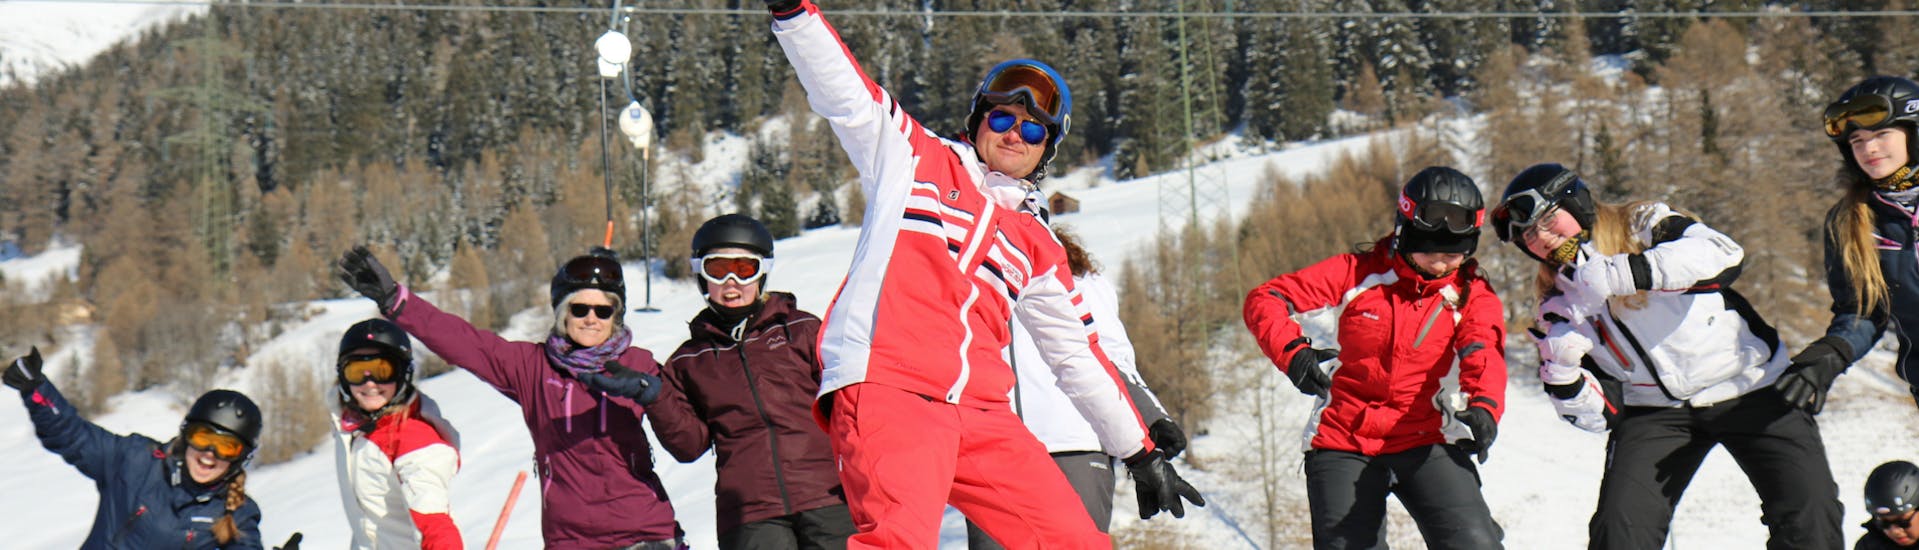 Cours de ski Adolescents (8-14 ans) pour Skieurs Expérimentés - Nauders.